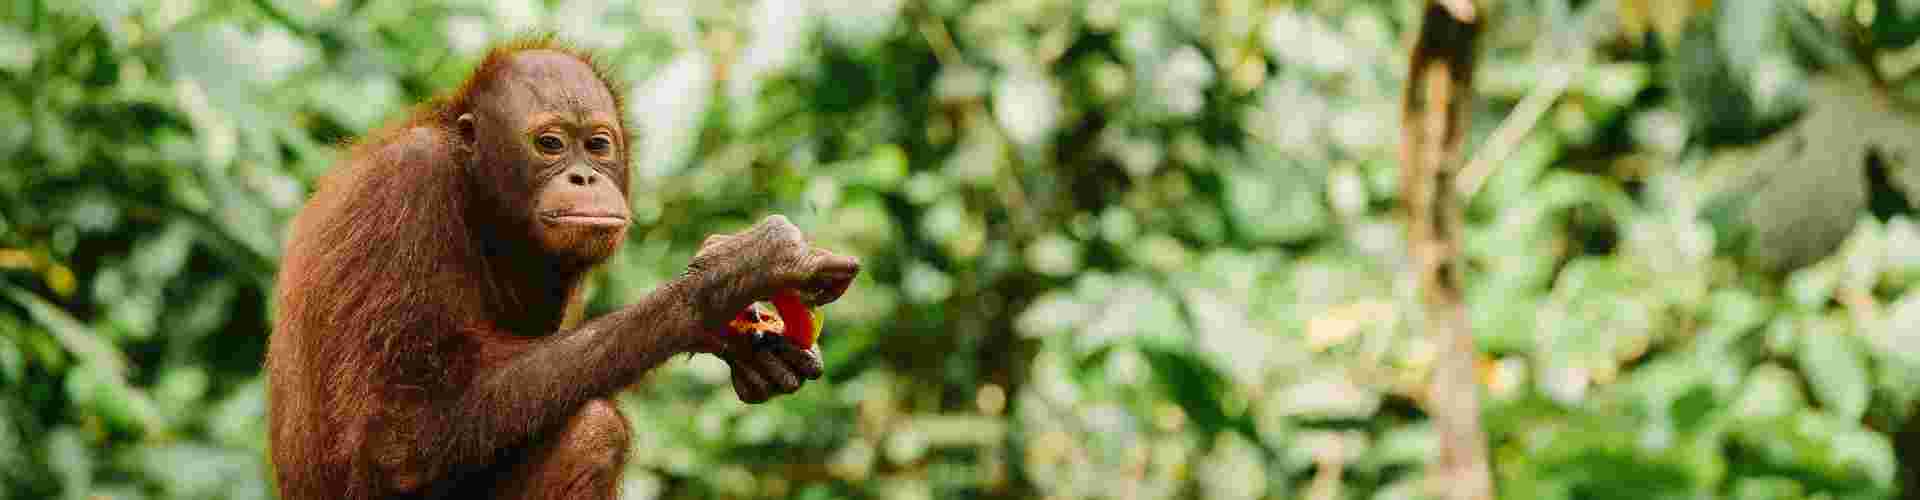 Turtles & orangutans: Wildlife conservation in Borneo I Intrepid